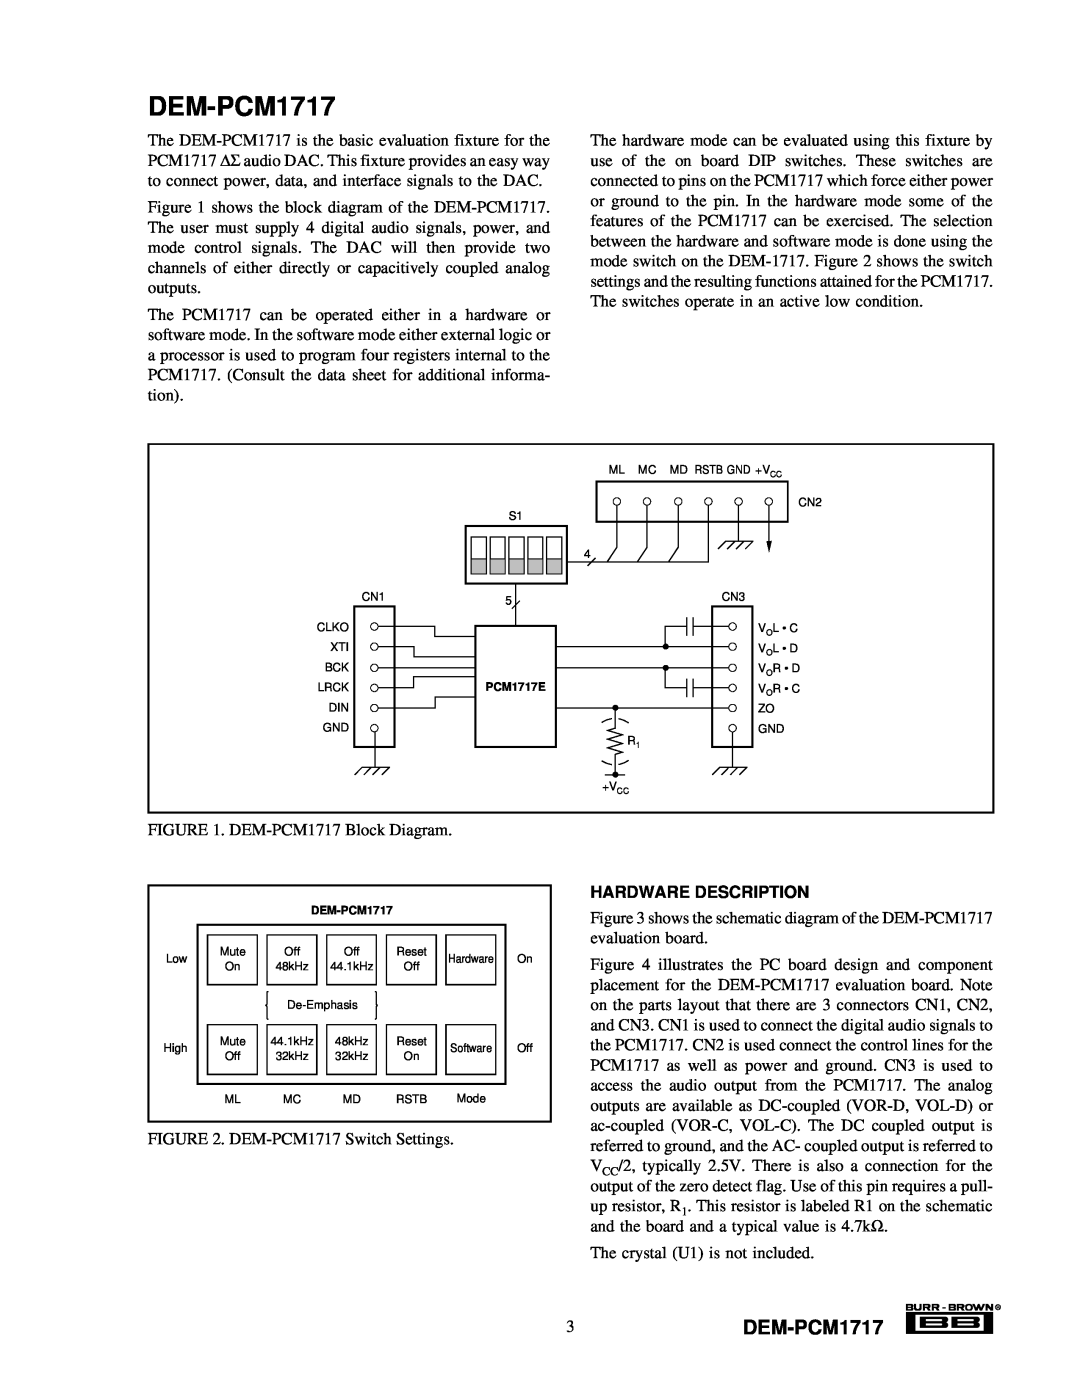 Texas Instruments manual 3DEM-PCM1717, Hardware Description 